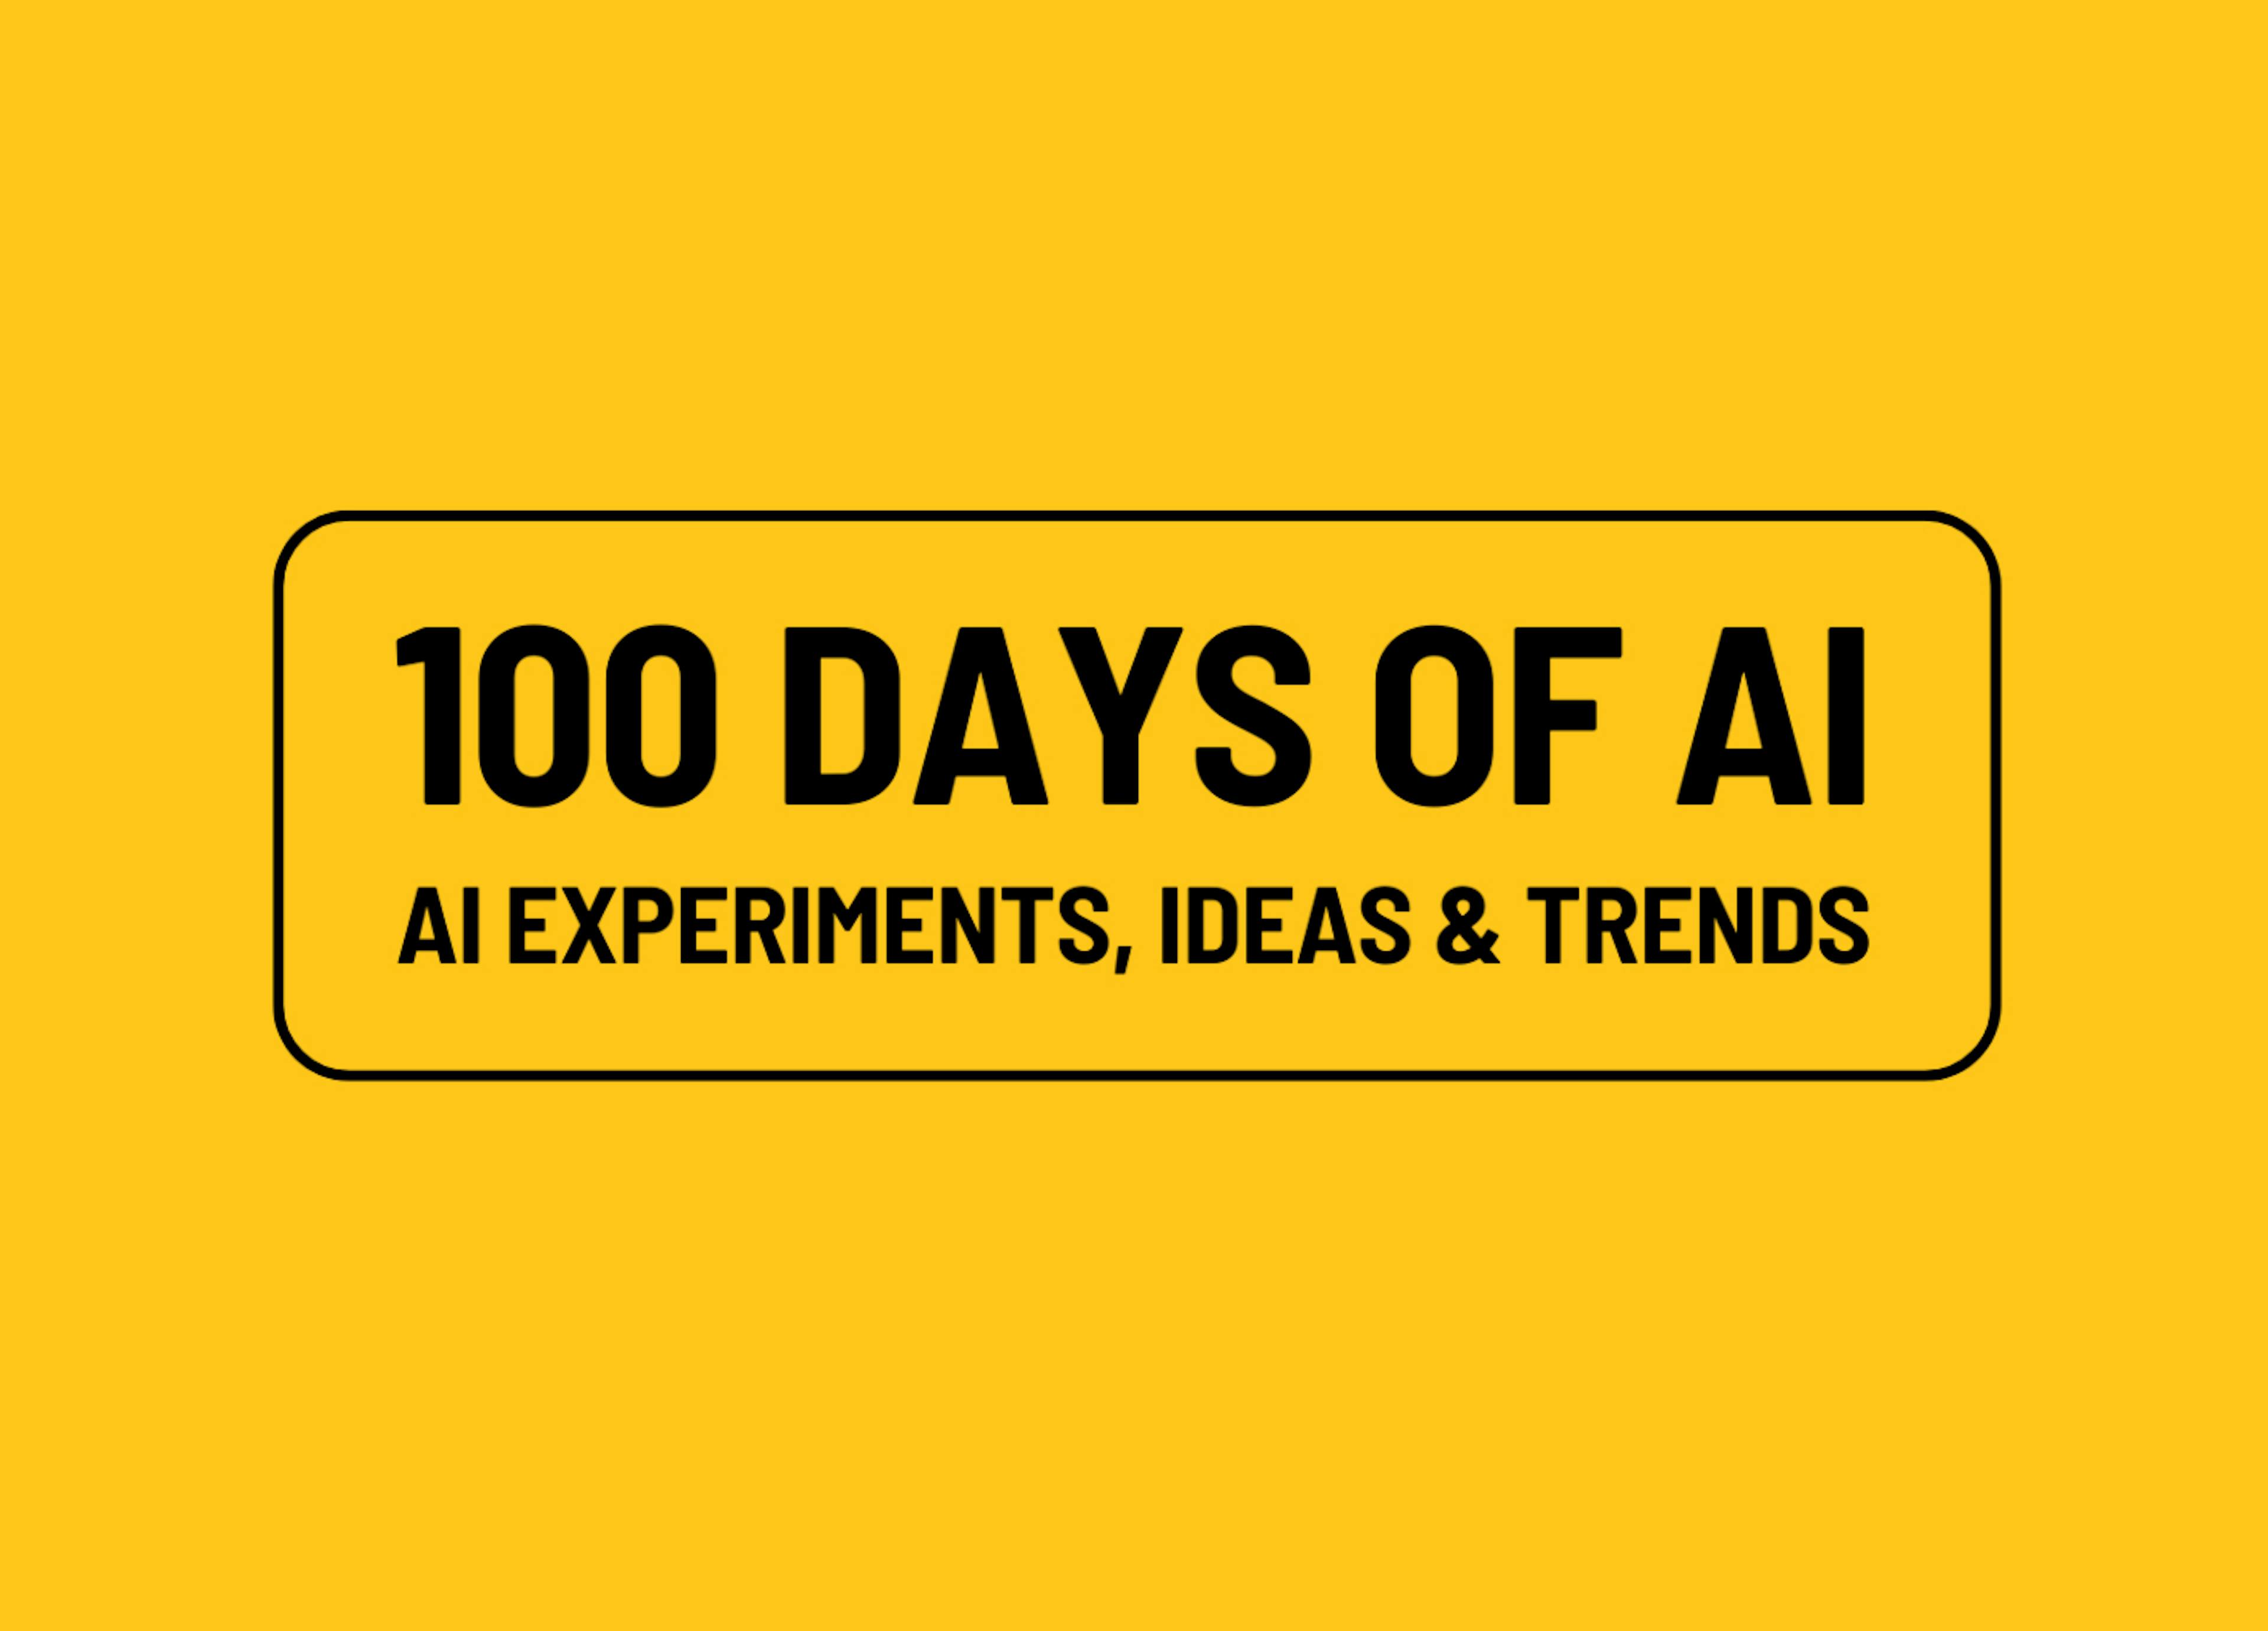 featured image - 100 días de IA, día 18: Desarrollo de un RAG utilizando el kernel semántico de Microsoft